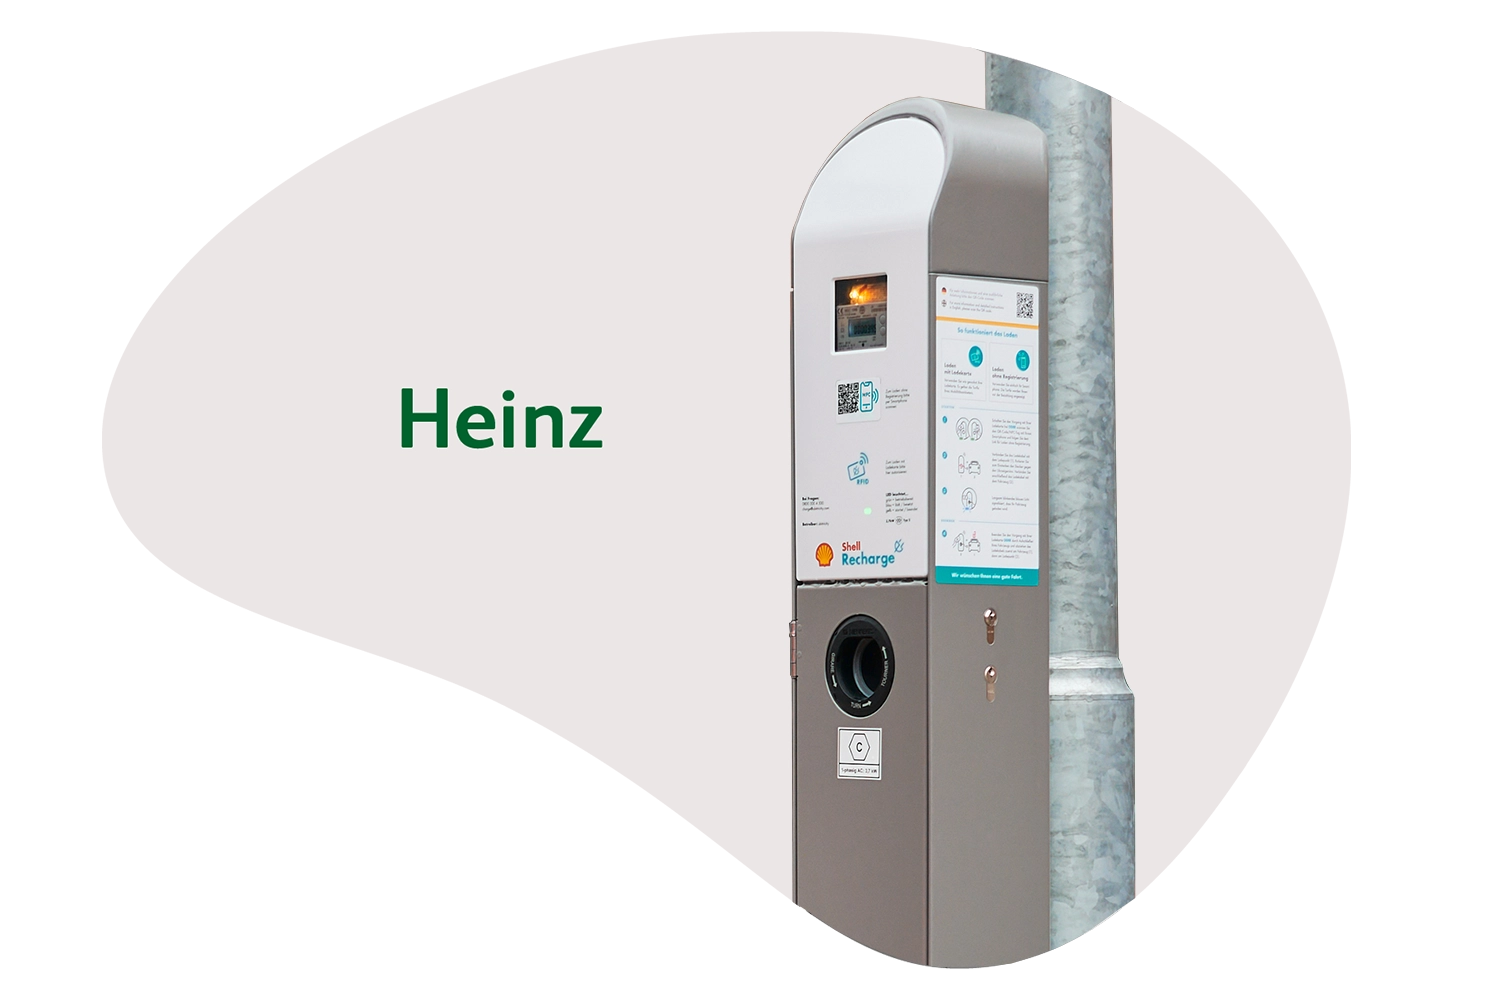 Ausbau der öffentlichen Ladeinfrastruktur in Deutschland mit der ubitricity-Laternenladesäule Heinz für das Aufladen von E-Autos in urbanen Anwohnergebieten.